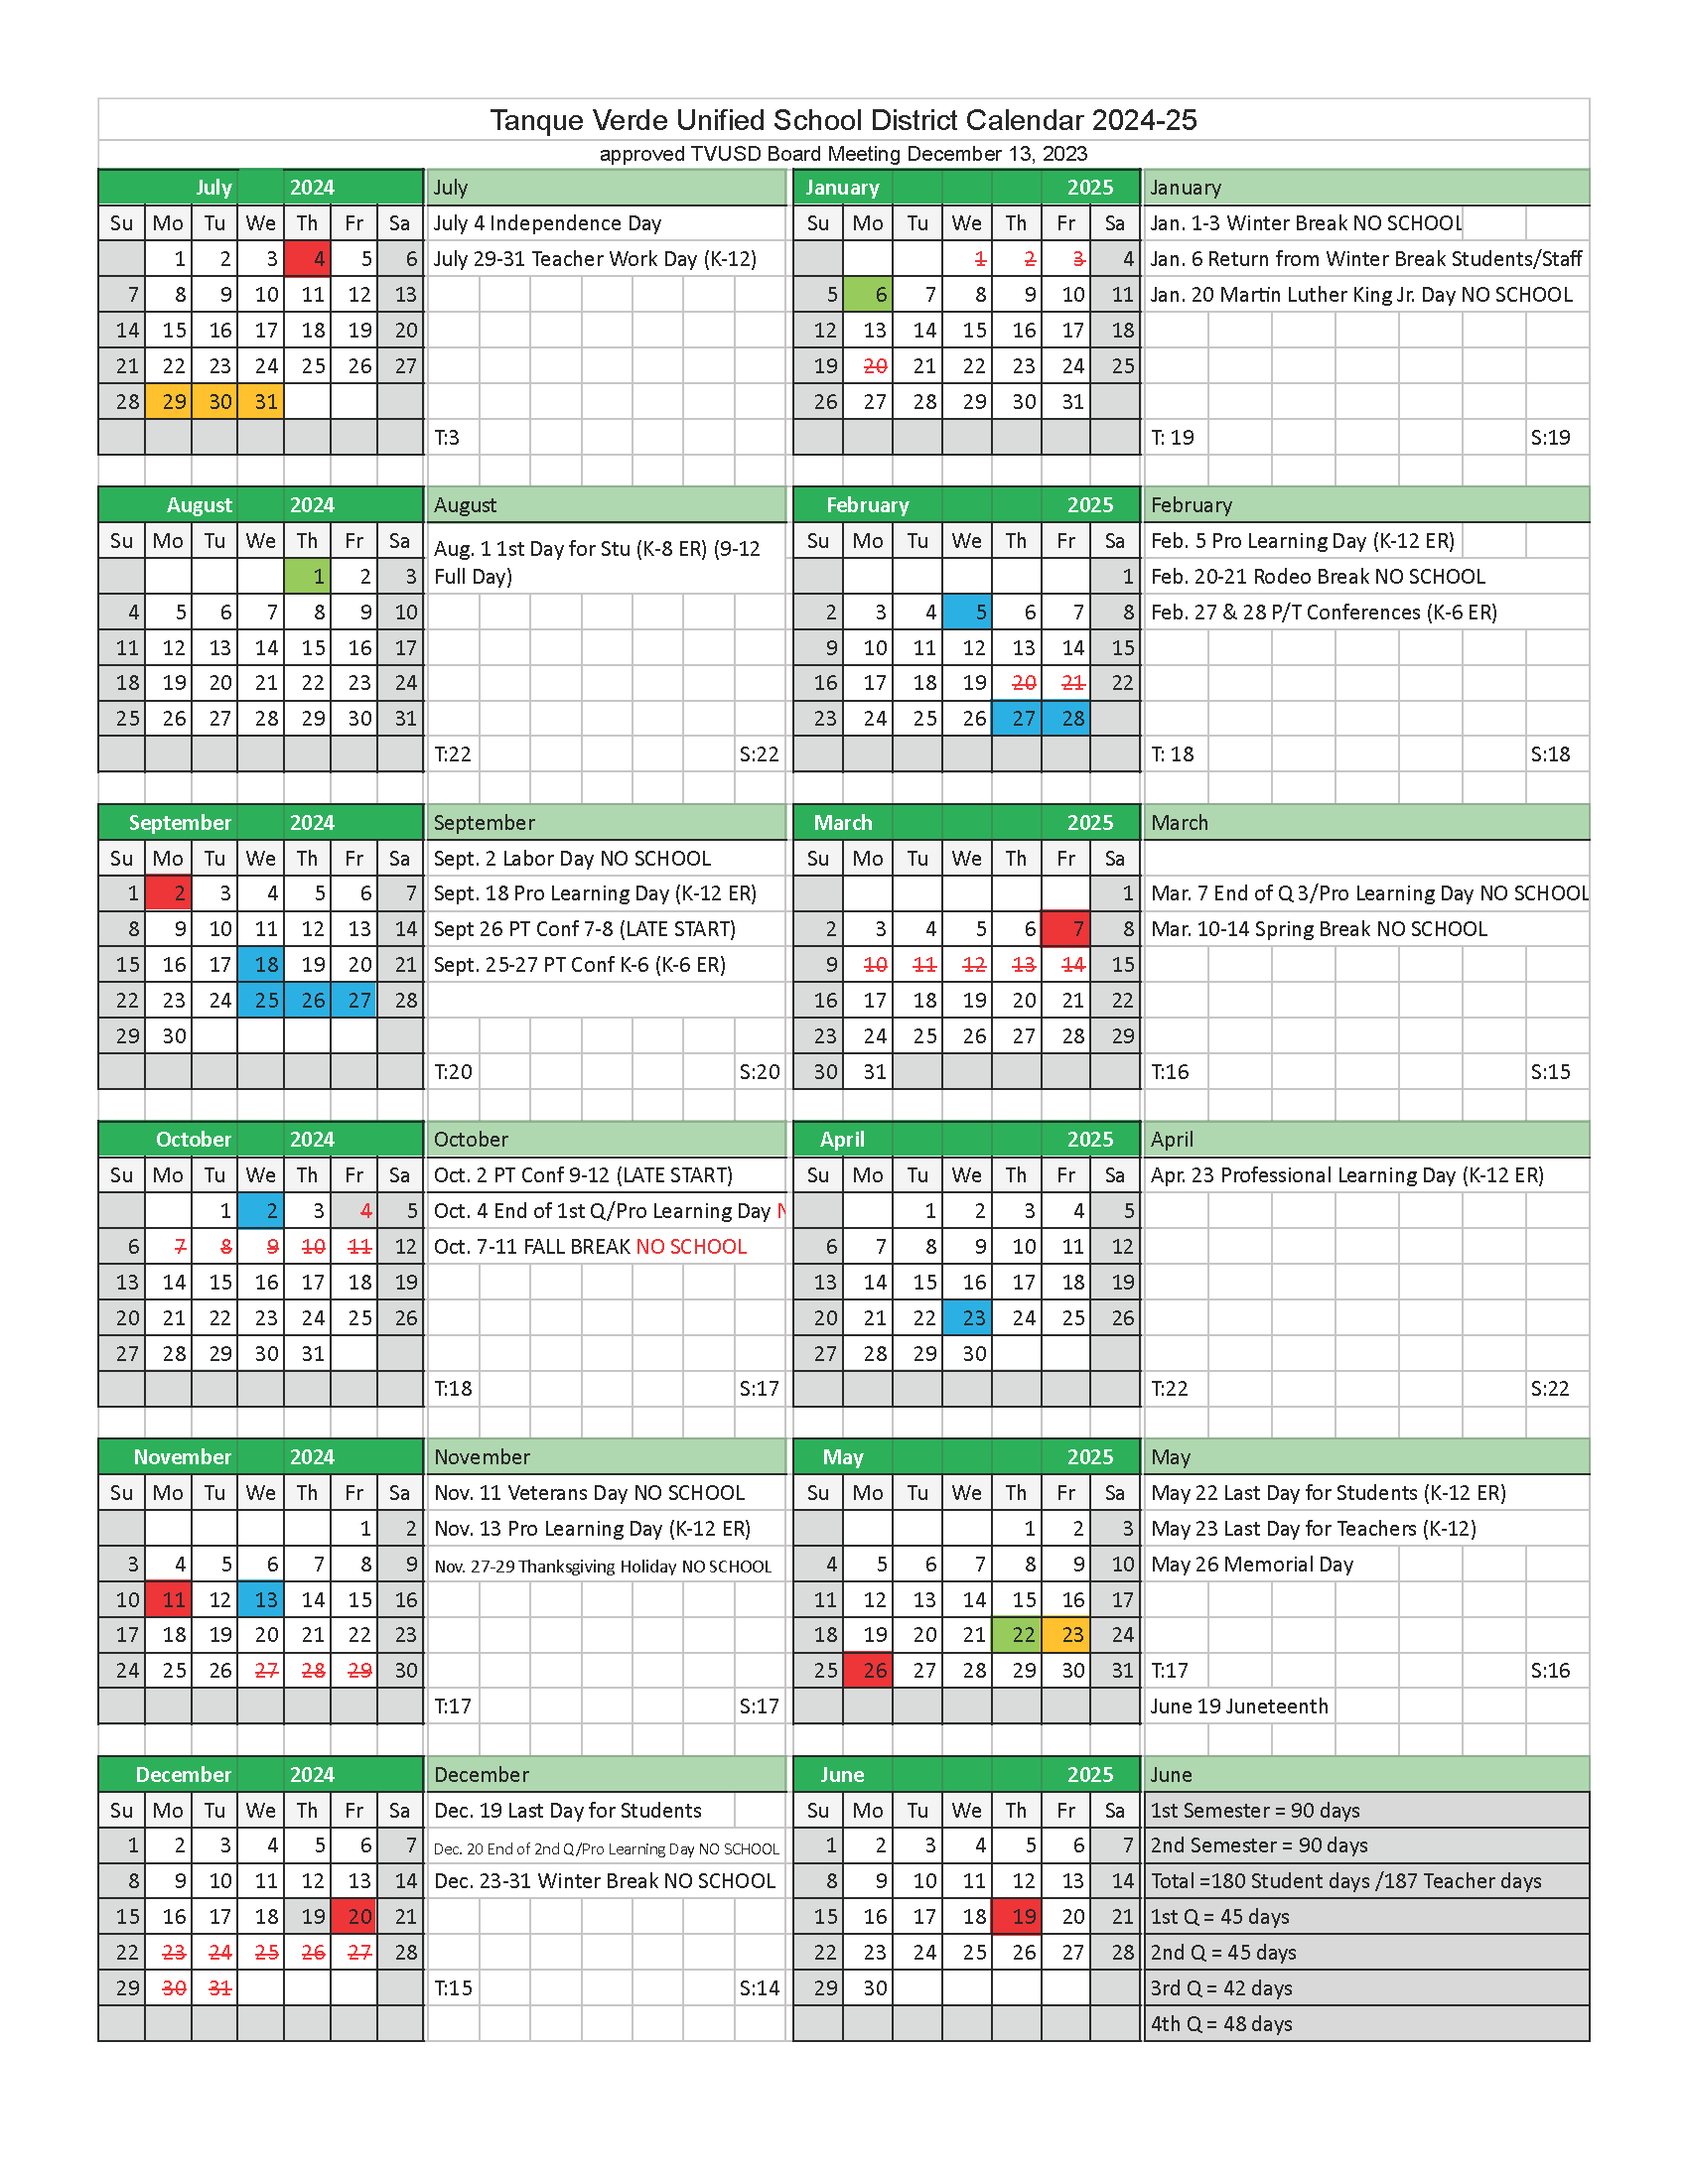 school year calendar 2024-25